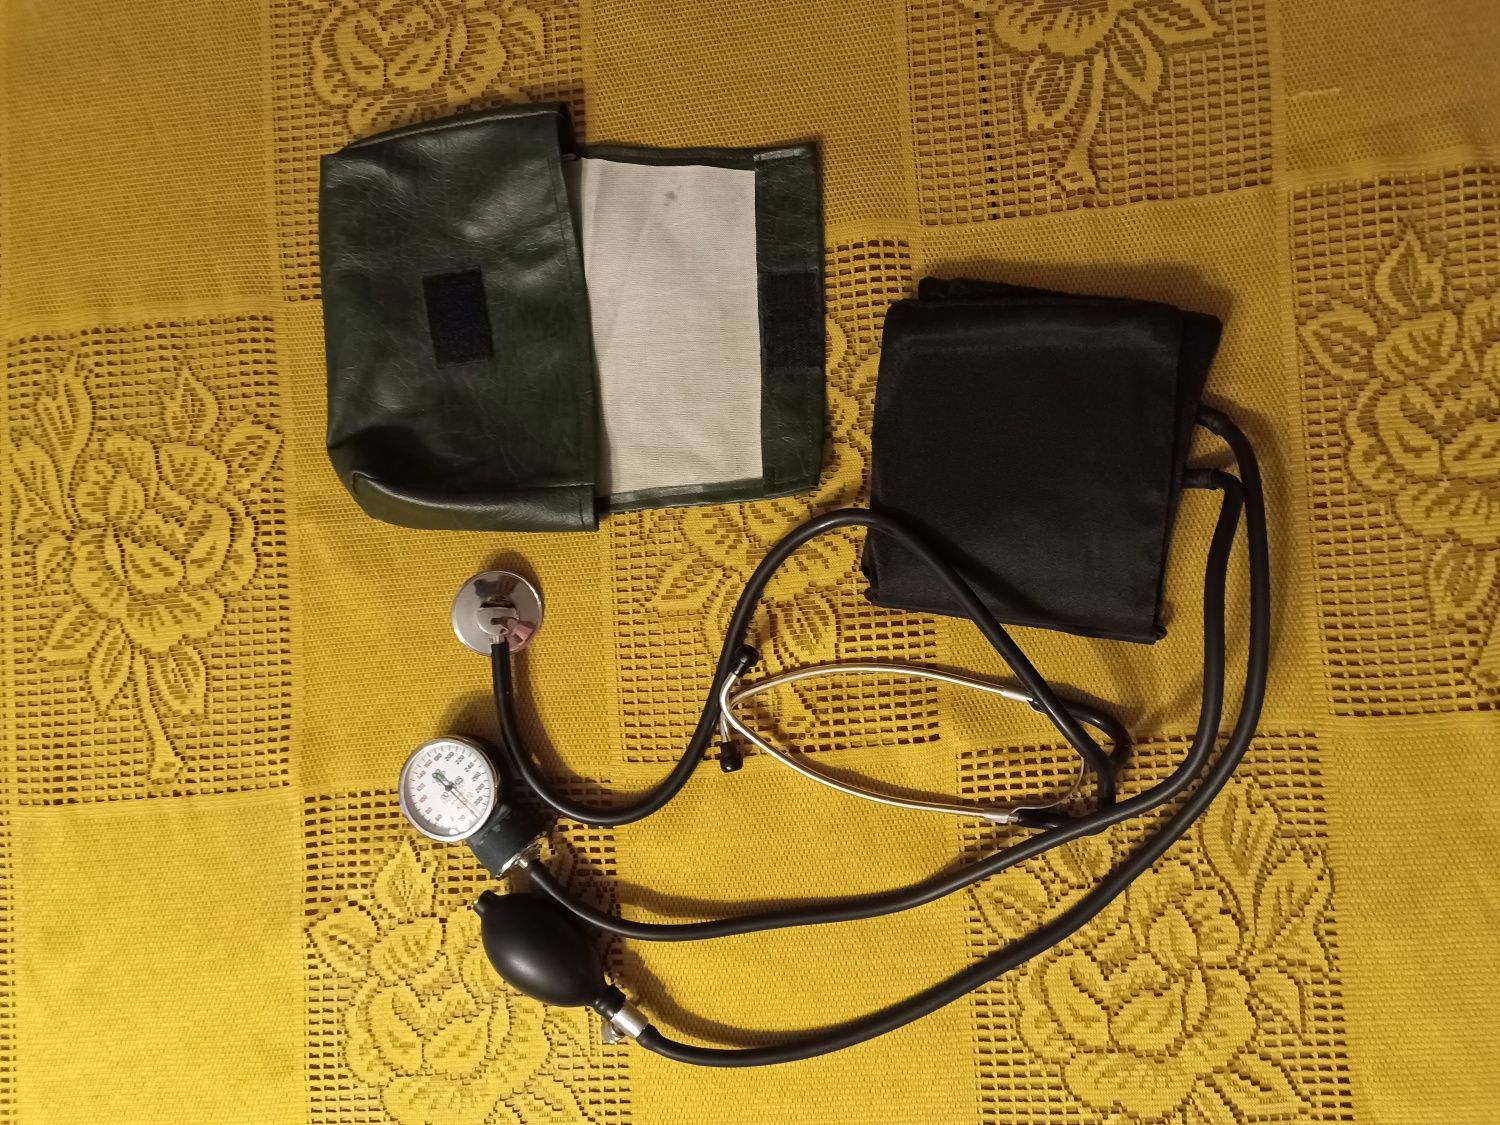 ciśnieniomierz manualny z stetoskopem i etui